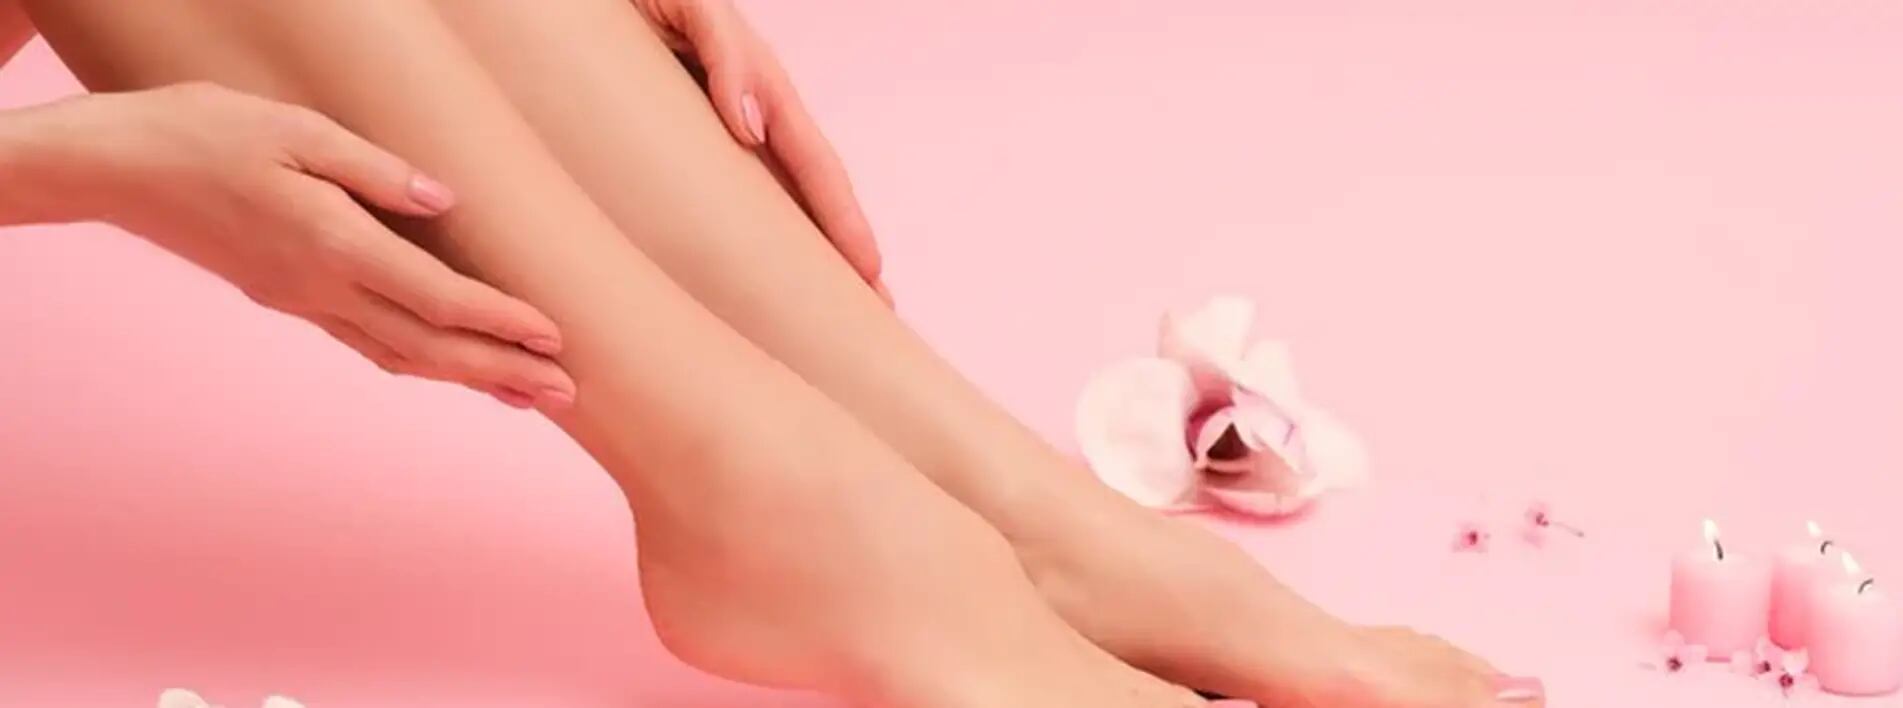 La importancia de masajearte los pies todos los días antes de dormir